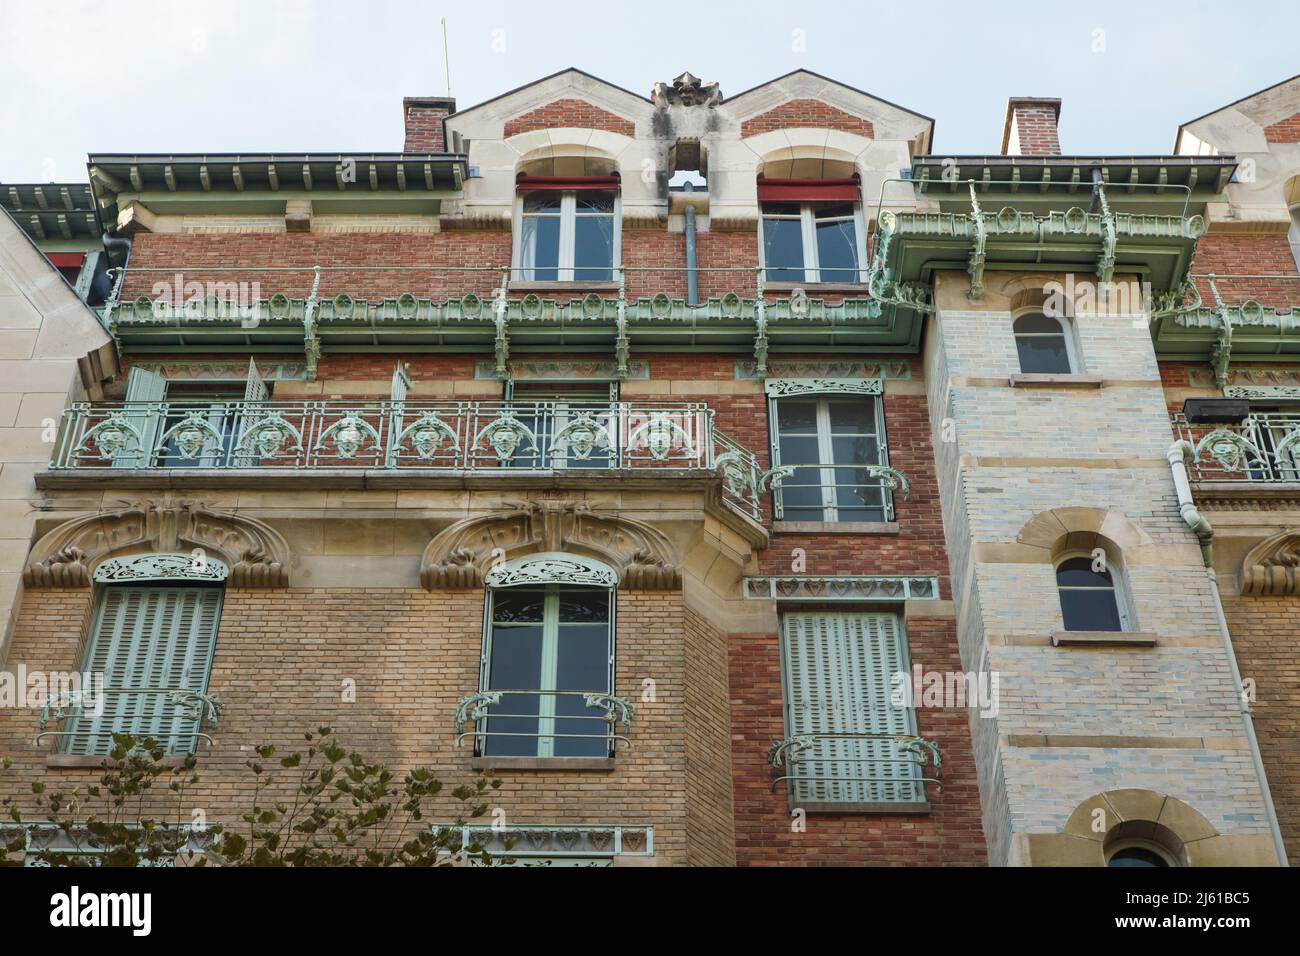 Castel Béranger en París, Francia. El edificio residencial conocido como Castel Béranger fue diseñado por el arquitecto francés Héctor Guimard y construido entre 1895 y 1898 en Rue de la Fontaine. Fue el primer edificio de París en el estilo conocido como Art Nouveau. Foto de stock